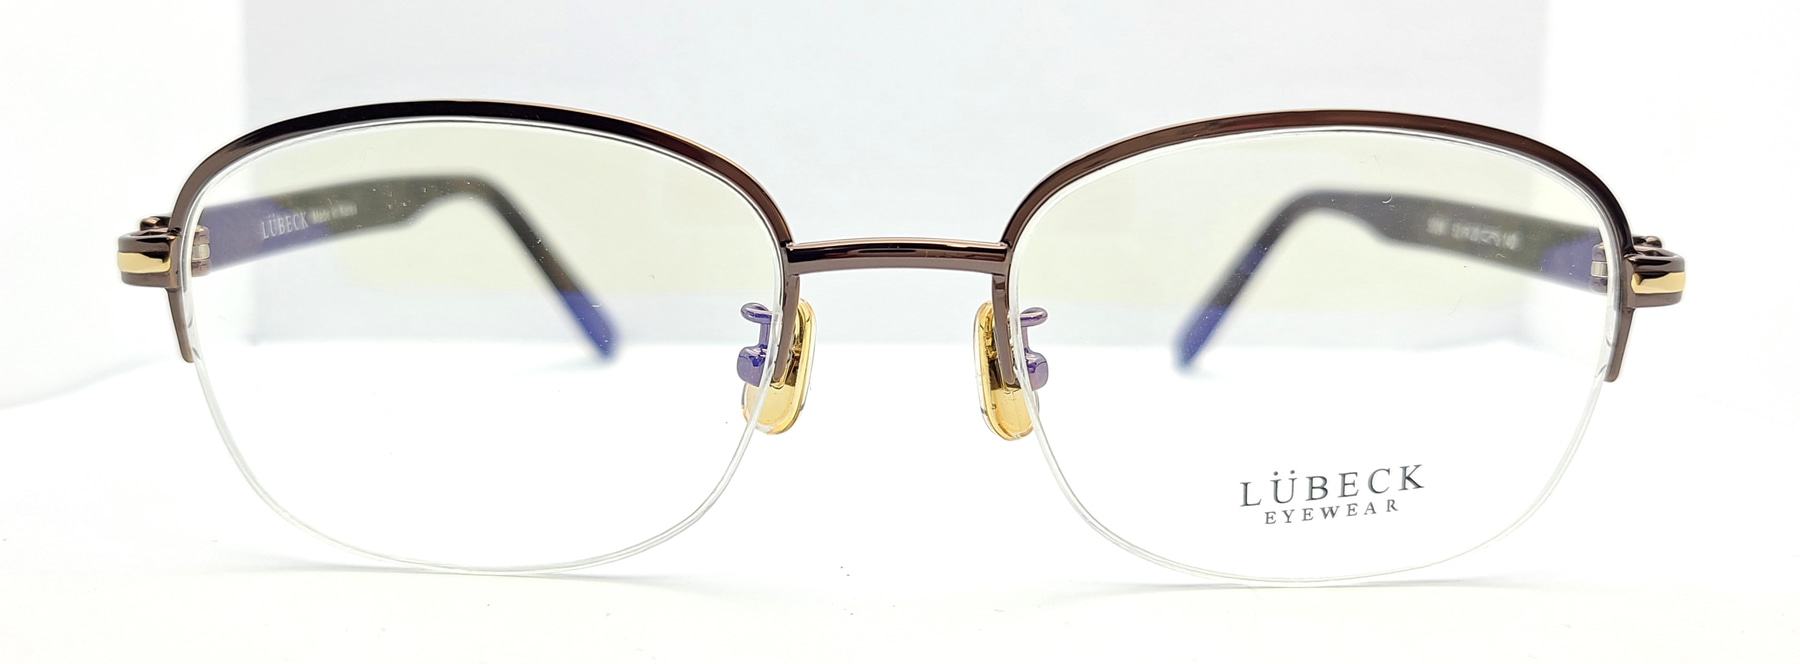 LUBECK 5004, Korean glasses, sunglasses, eyeglasses, glasses